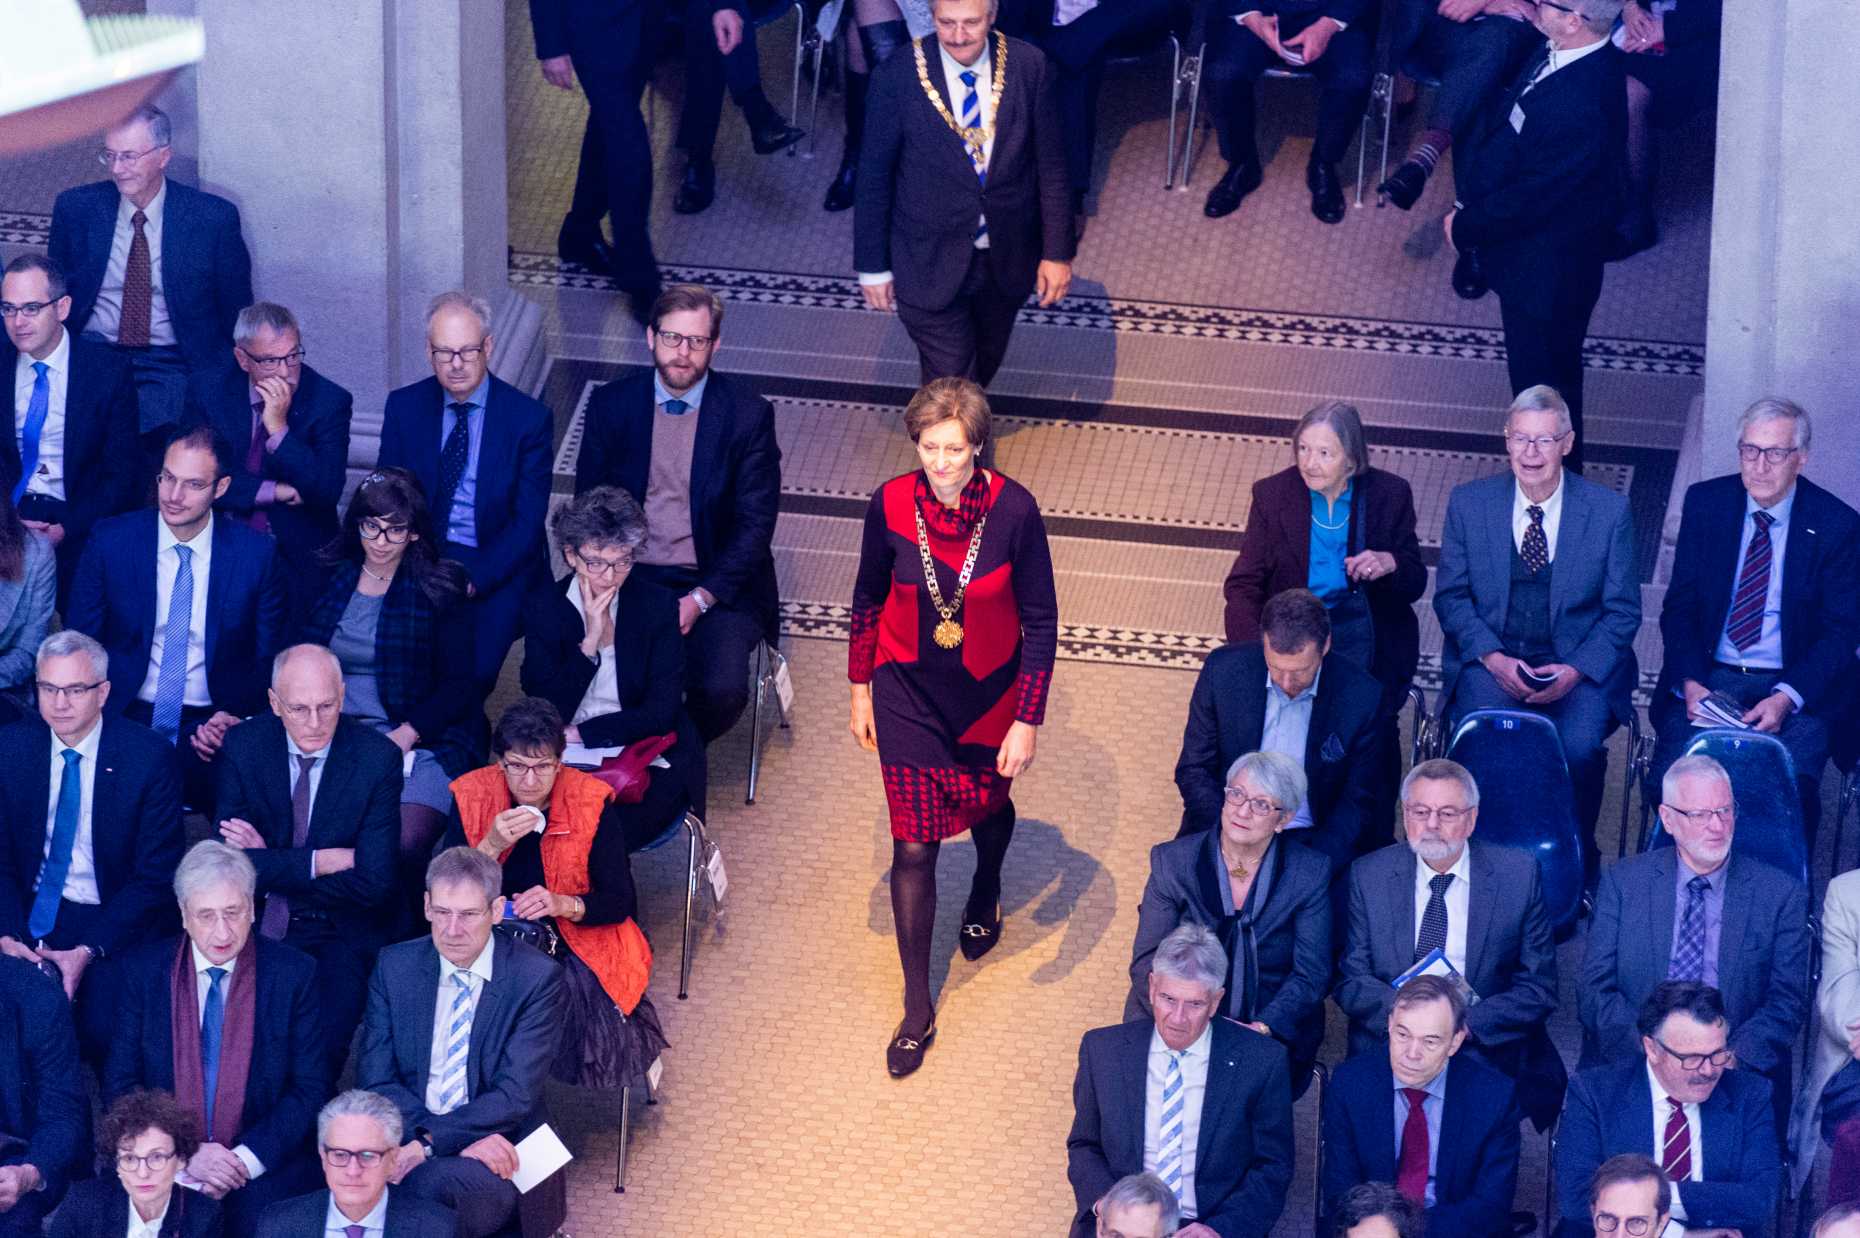 Vergr?sserte Ansicht: ETH-Rektorin Sarah Springman beim Einmarsch am ETH-Tag 2018. (Bild: ETH Zürich / Oliver Bartenschlager)